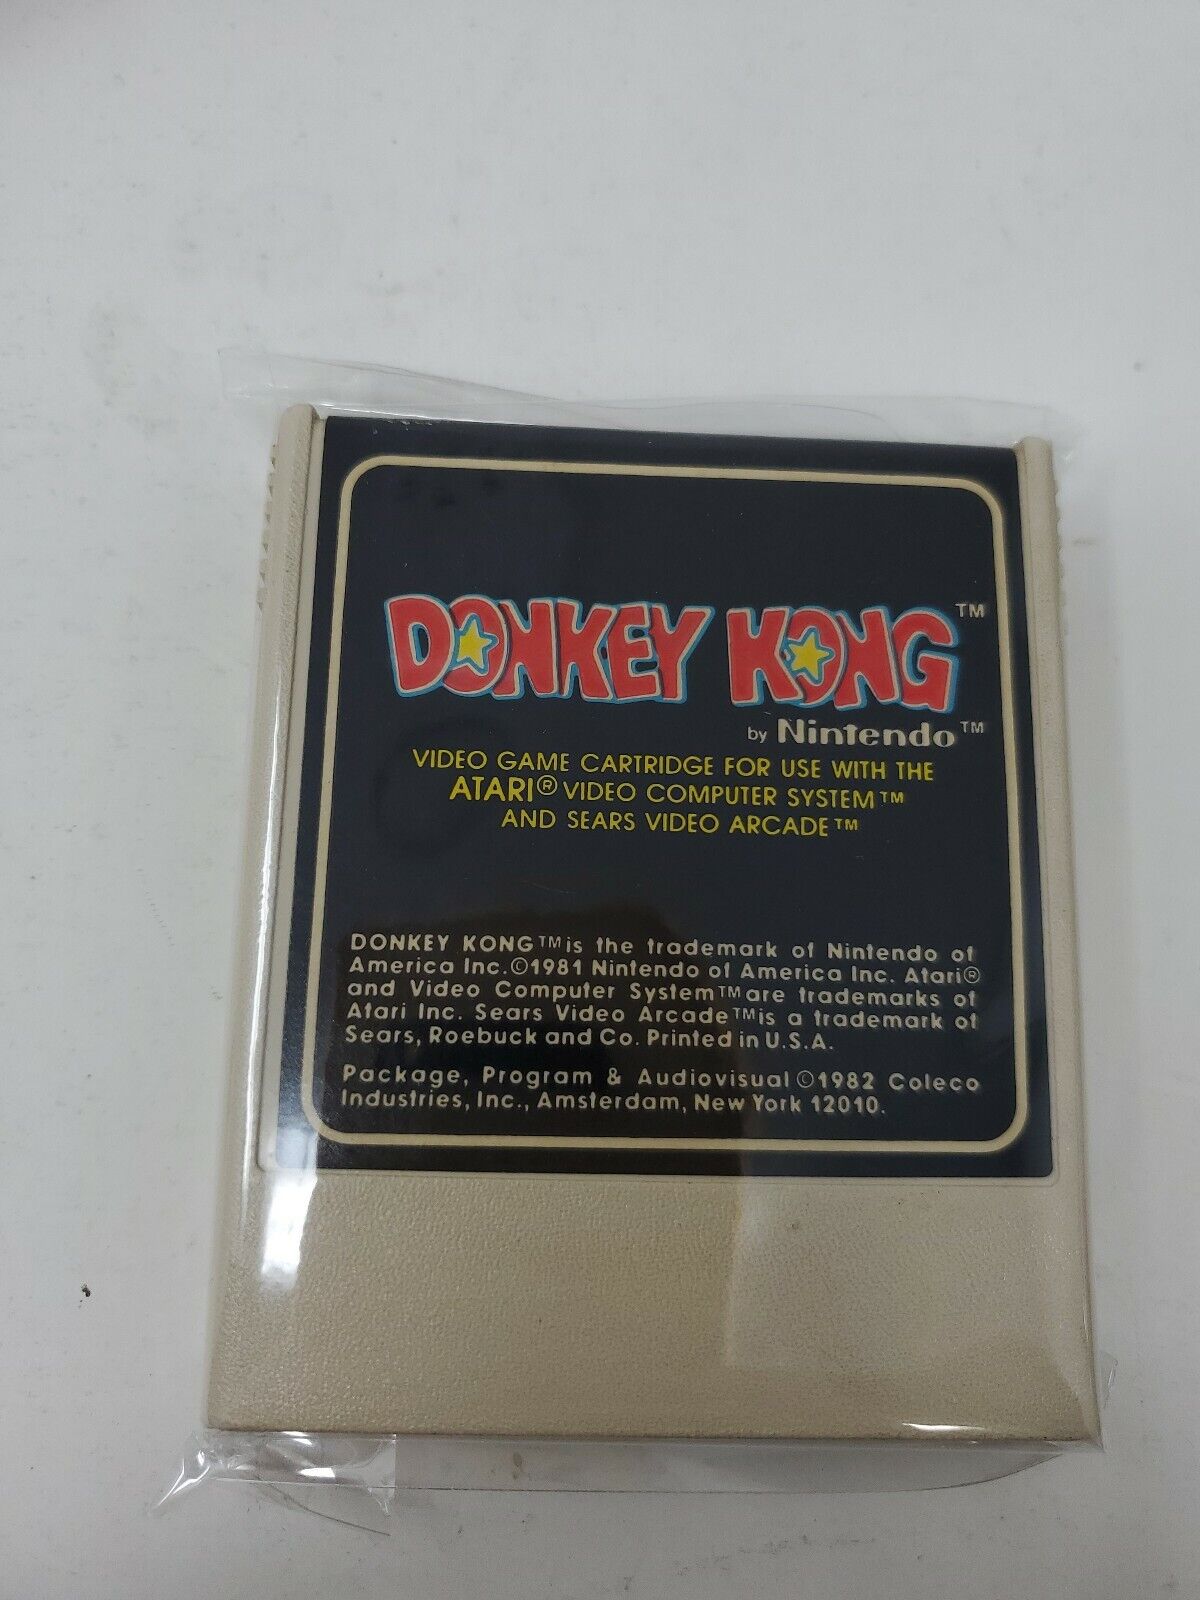 Donkey Kong first print Atari 2600 Game CIB Hang Tab W/ Manual & Inserts Tested Popularny